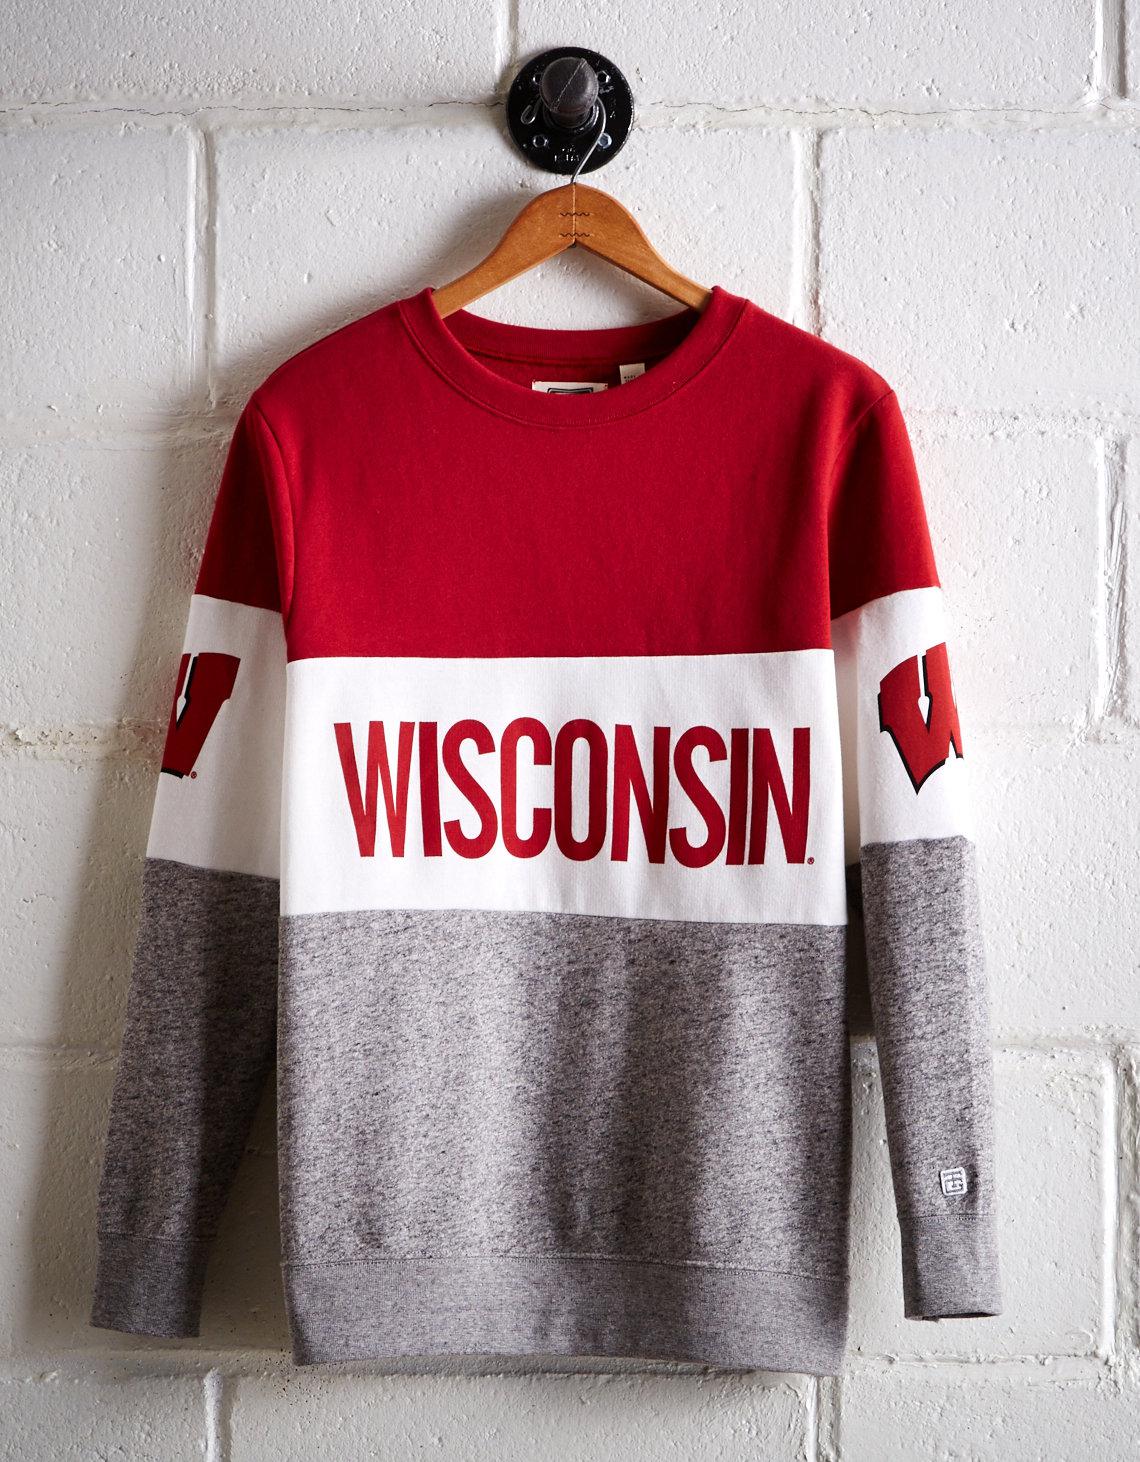 Wisconsin Colorblock Sweatshirt in Red 